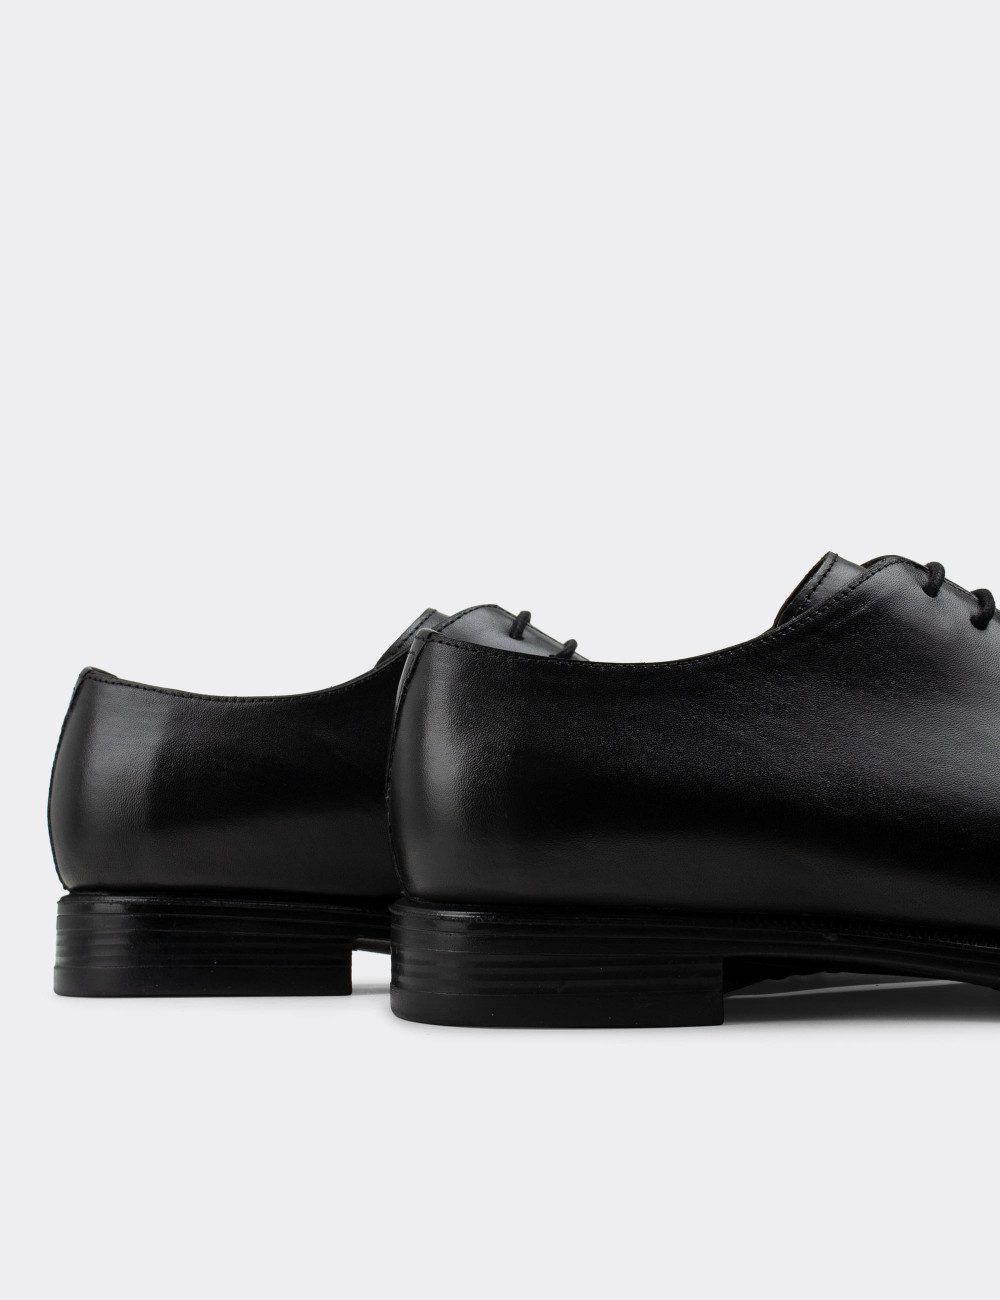 Hakiki Deri Siyah Klasik Erkek Ayakkabı - 01830MSYHC02